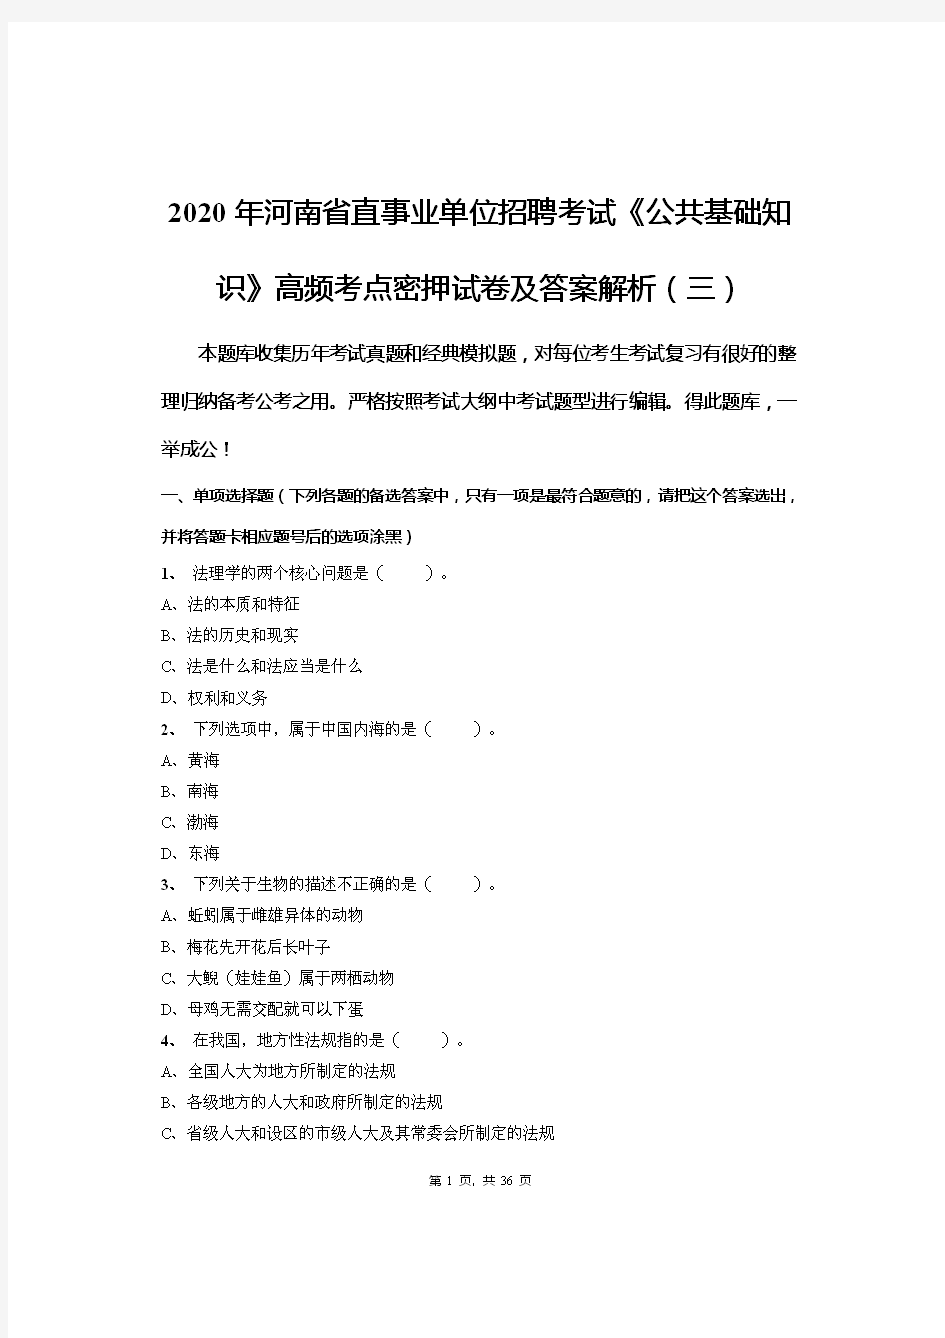 2020年河南省直事业单位招聘考试《公共基础知识》高频考点密押试卷及答案解析(三)